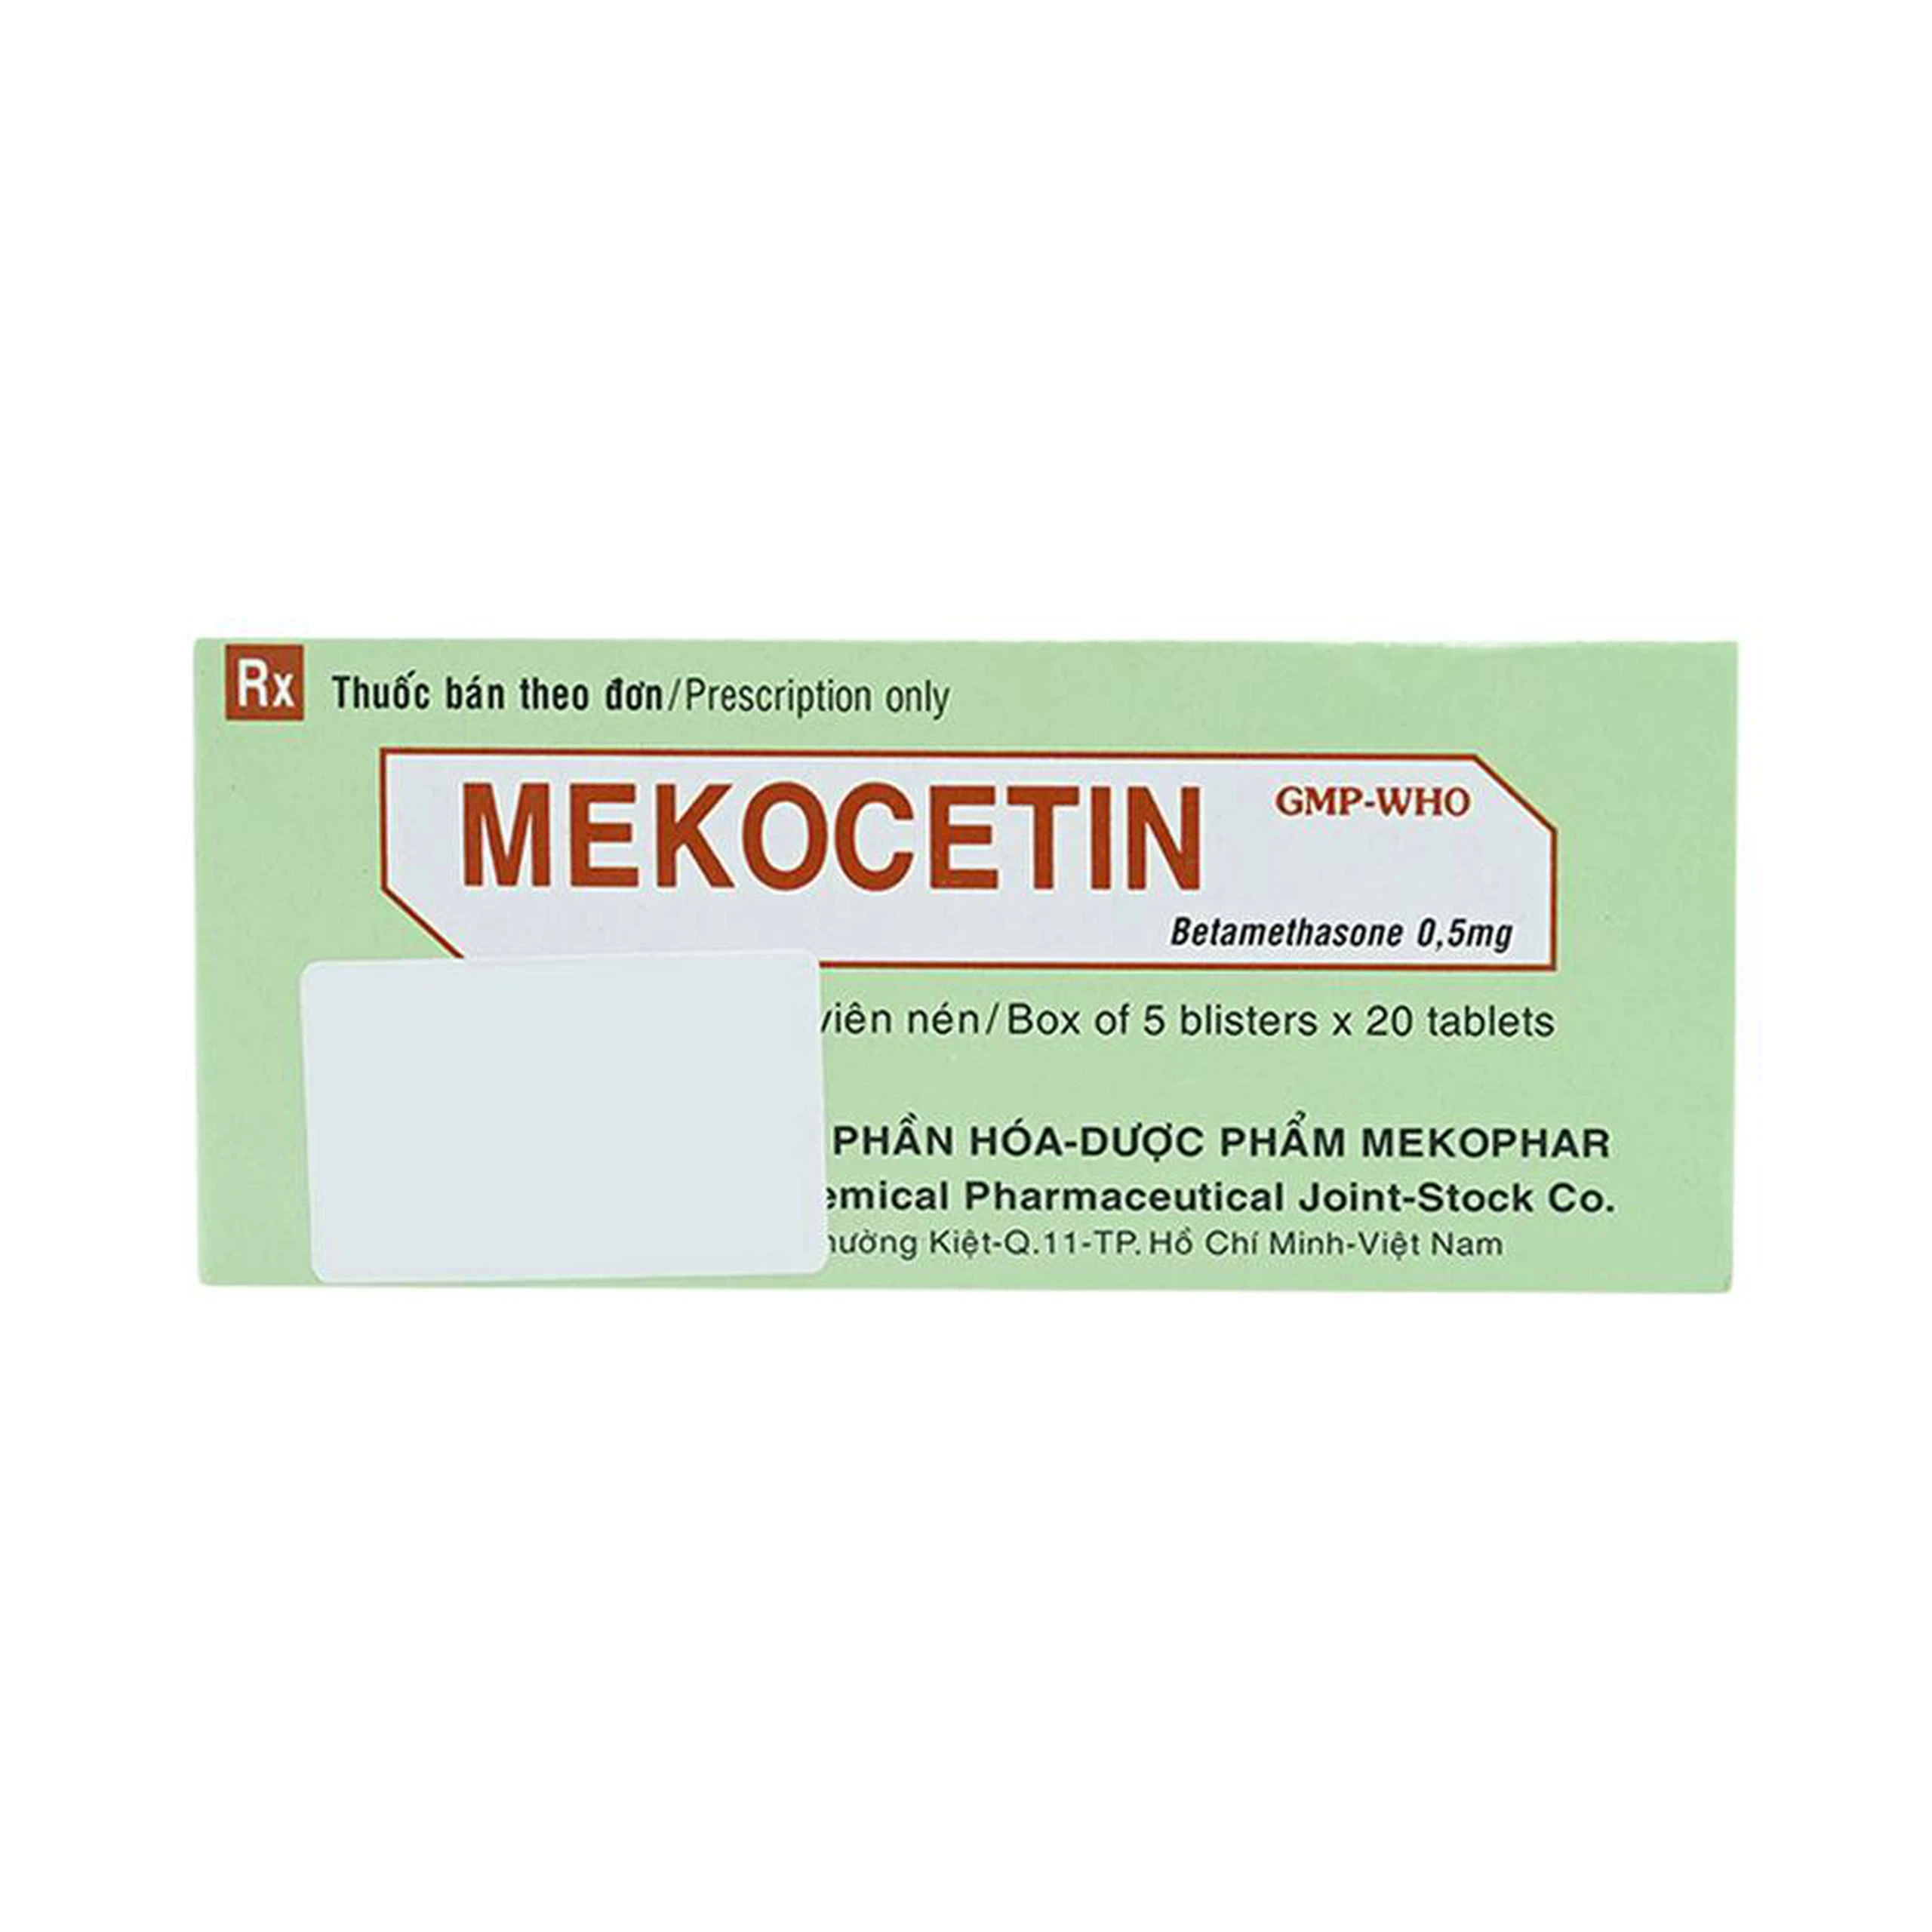 Thuốc Mekocetin 0.5mg Mekophar điều trị thấp khớp, bệnh collagen, bệnh ngoài da, dị ứng (5 vỉ x 20 viên) 